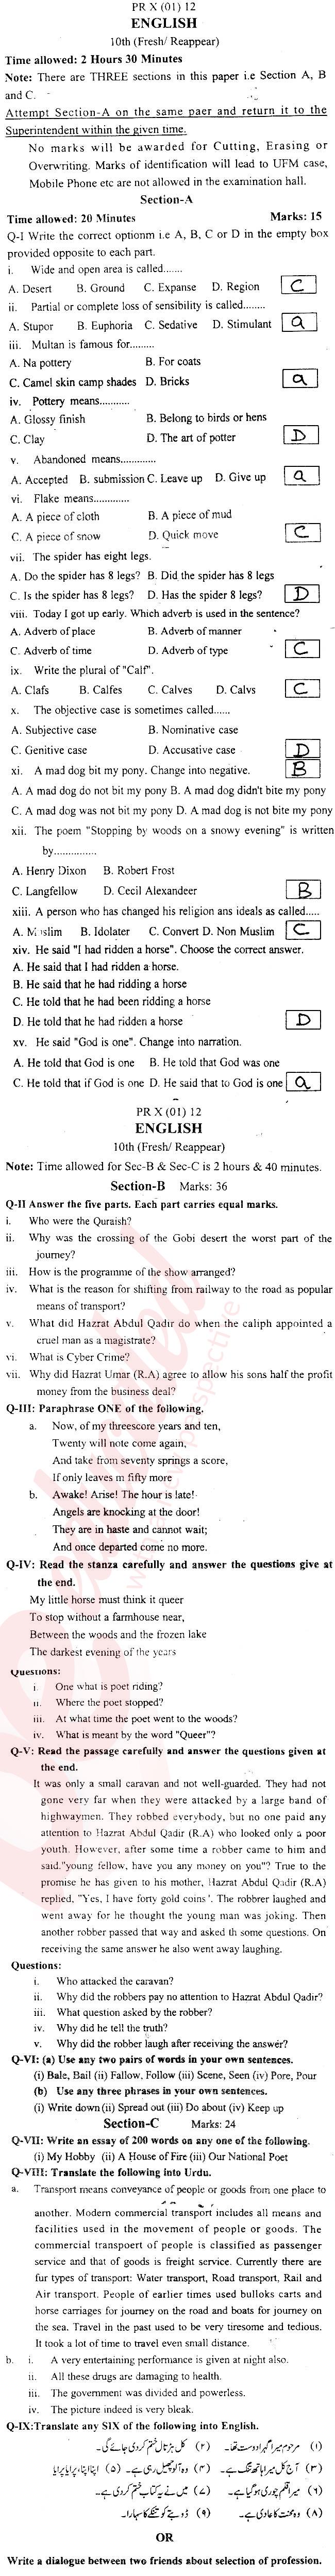 English 10th Urdu Medium Past Paper Group 1 BISE Kohat 2012